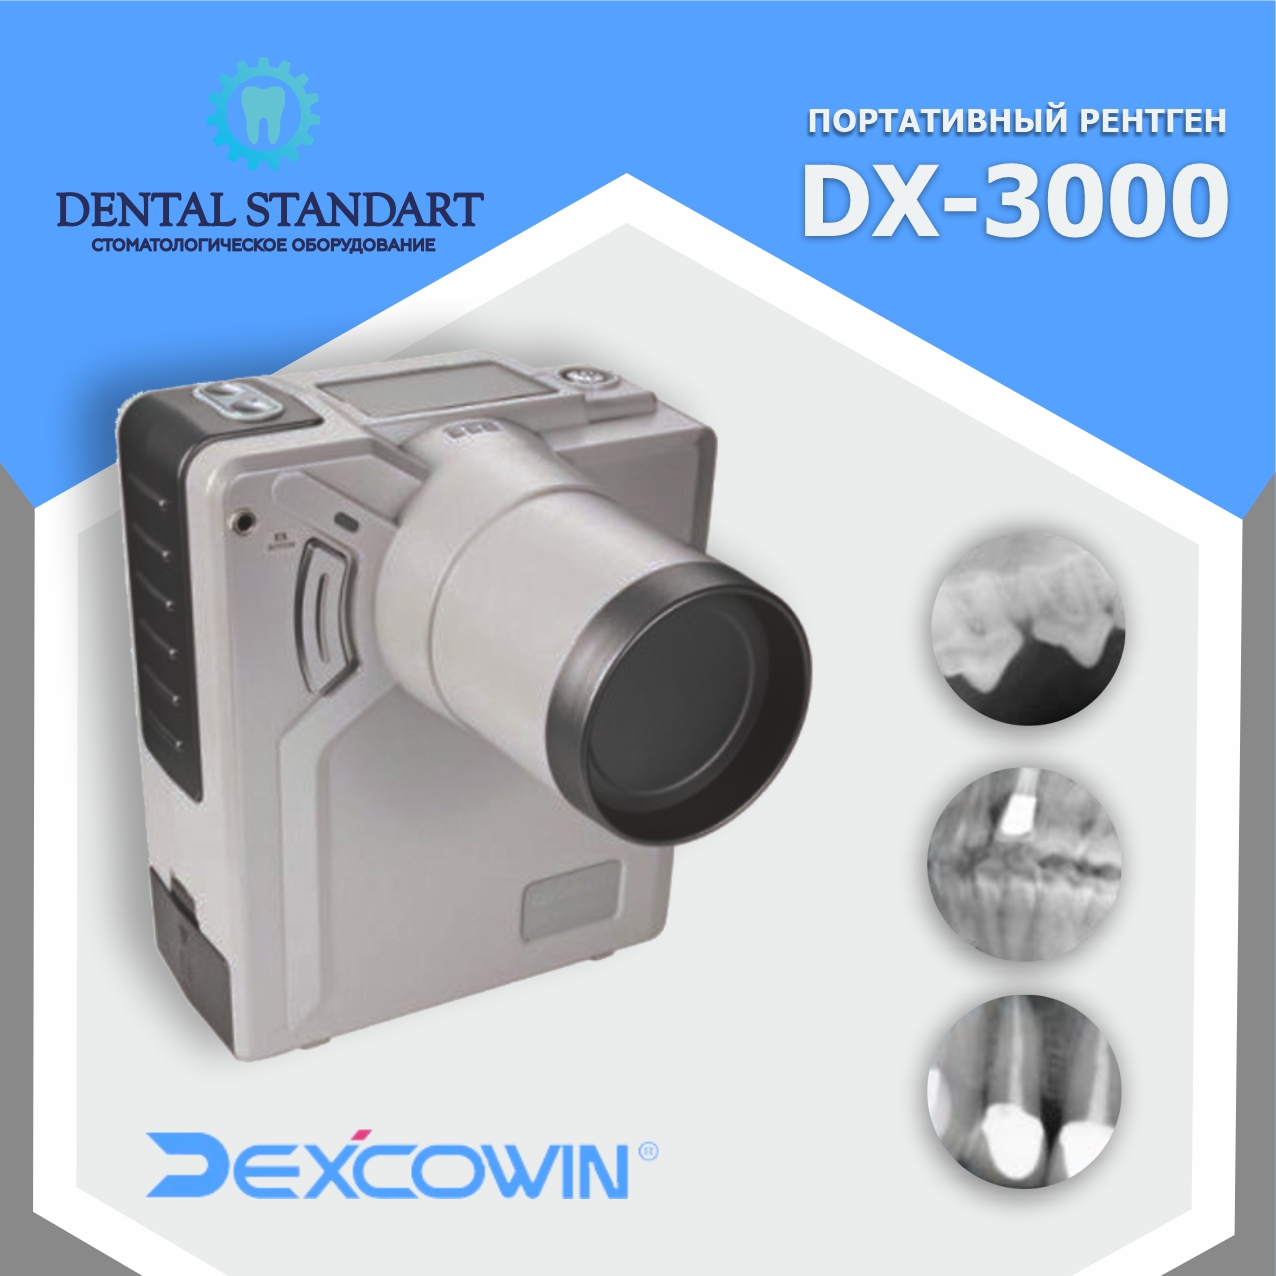 DX-3000 — высокочастотный портативный рентген-аппарат